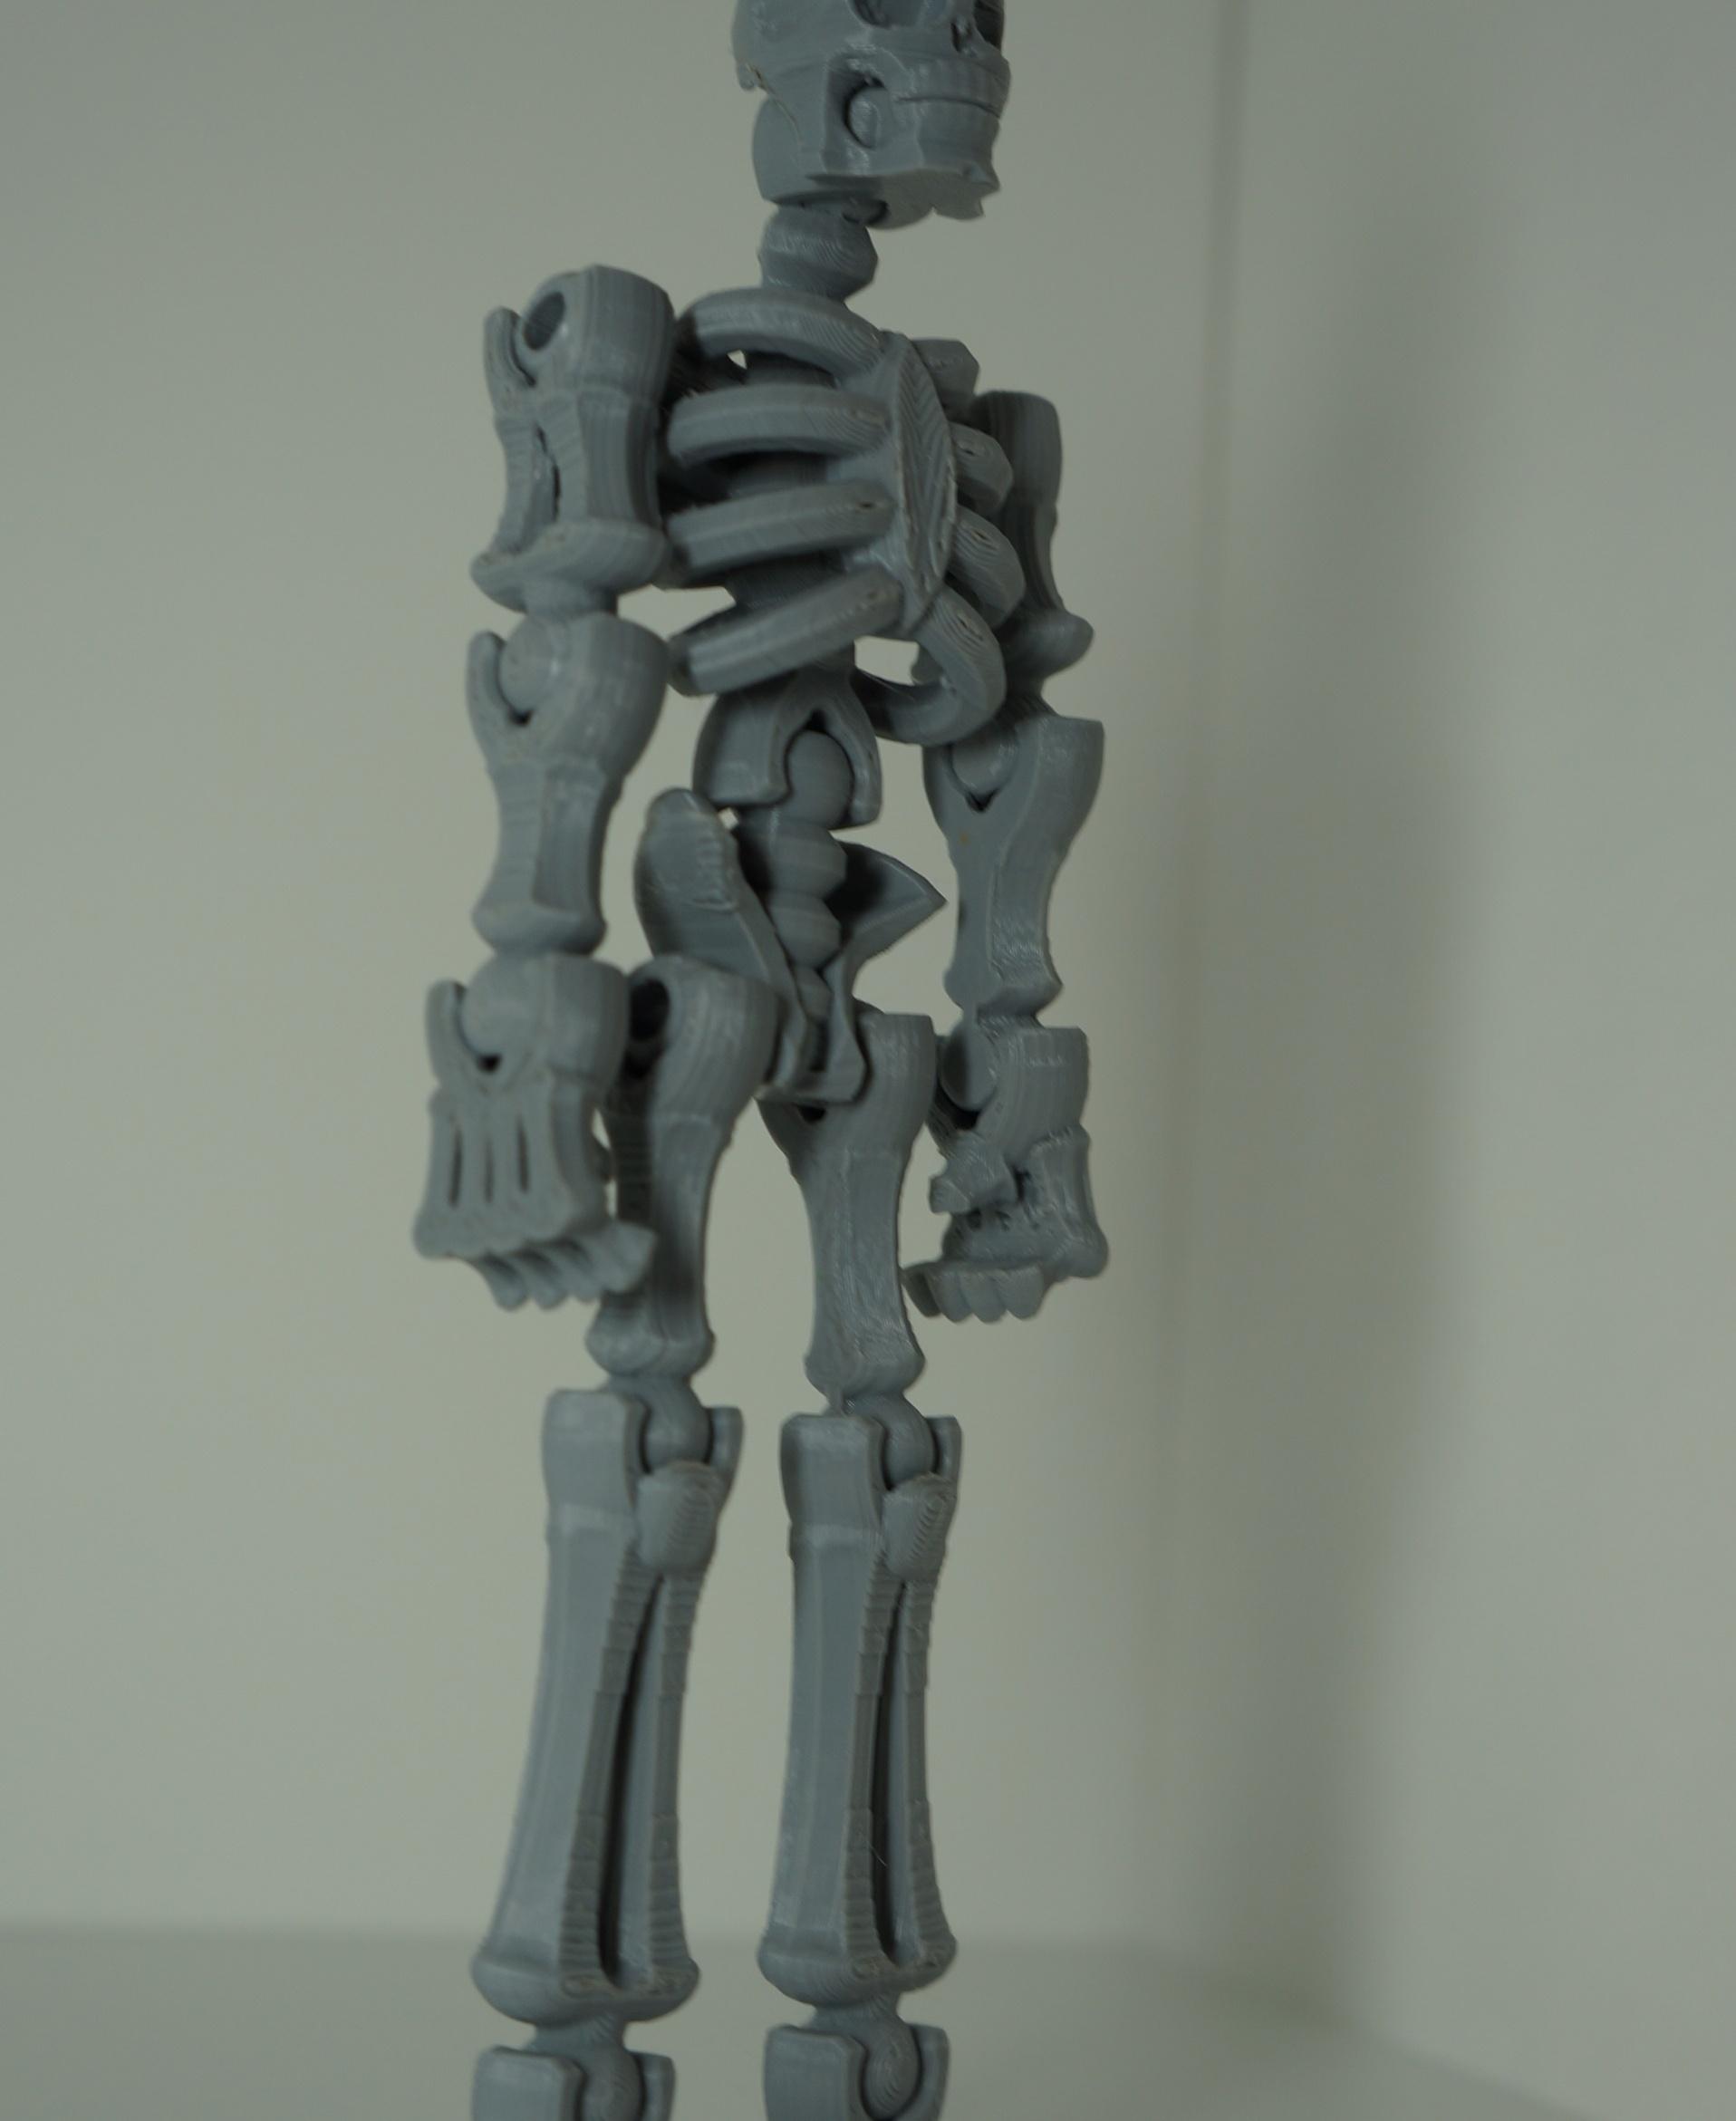 Toy skeleton 3d model